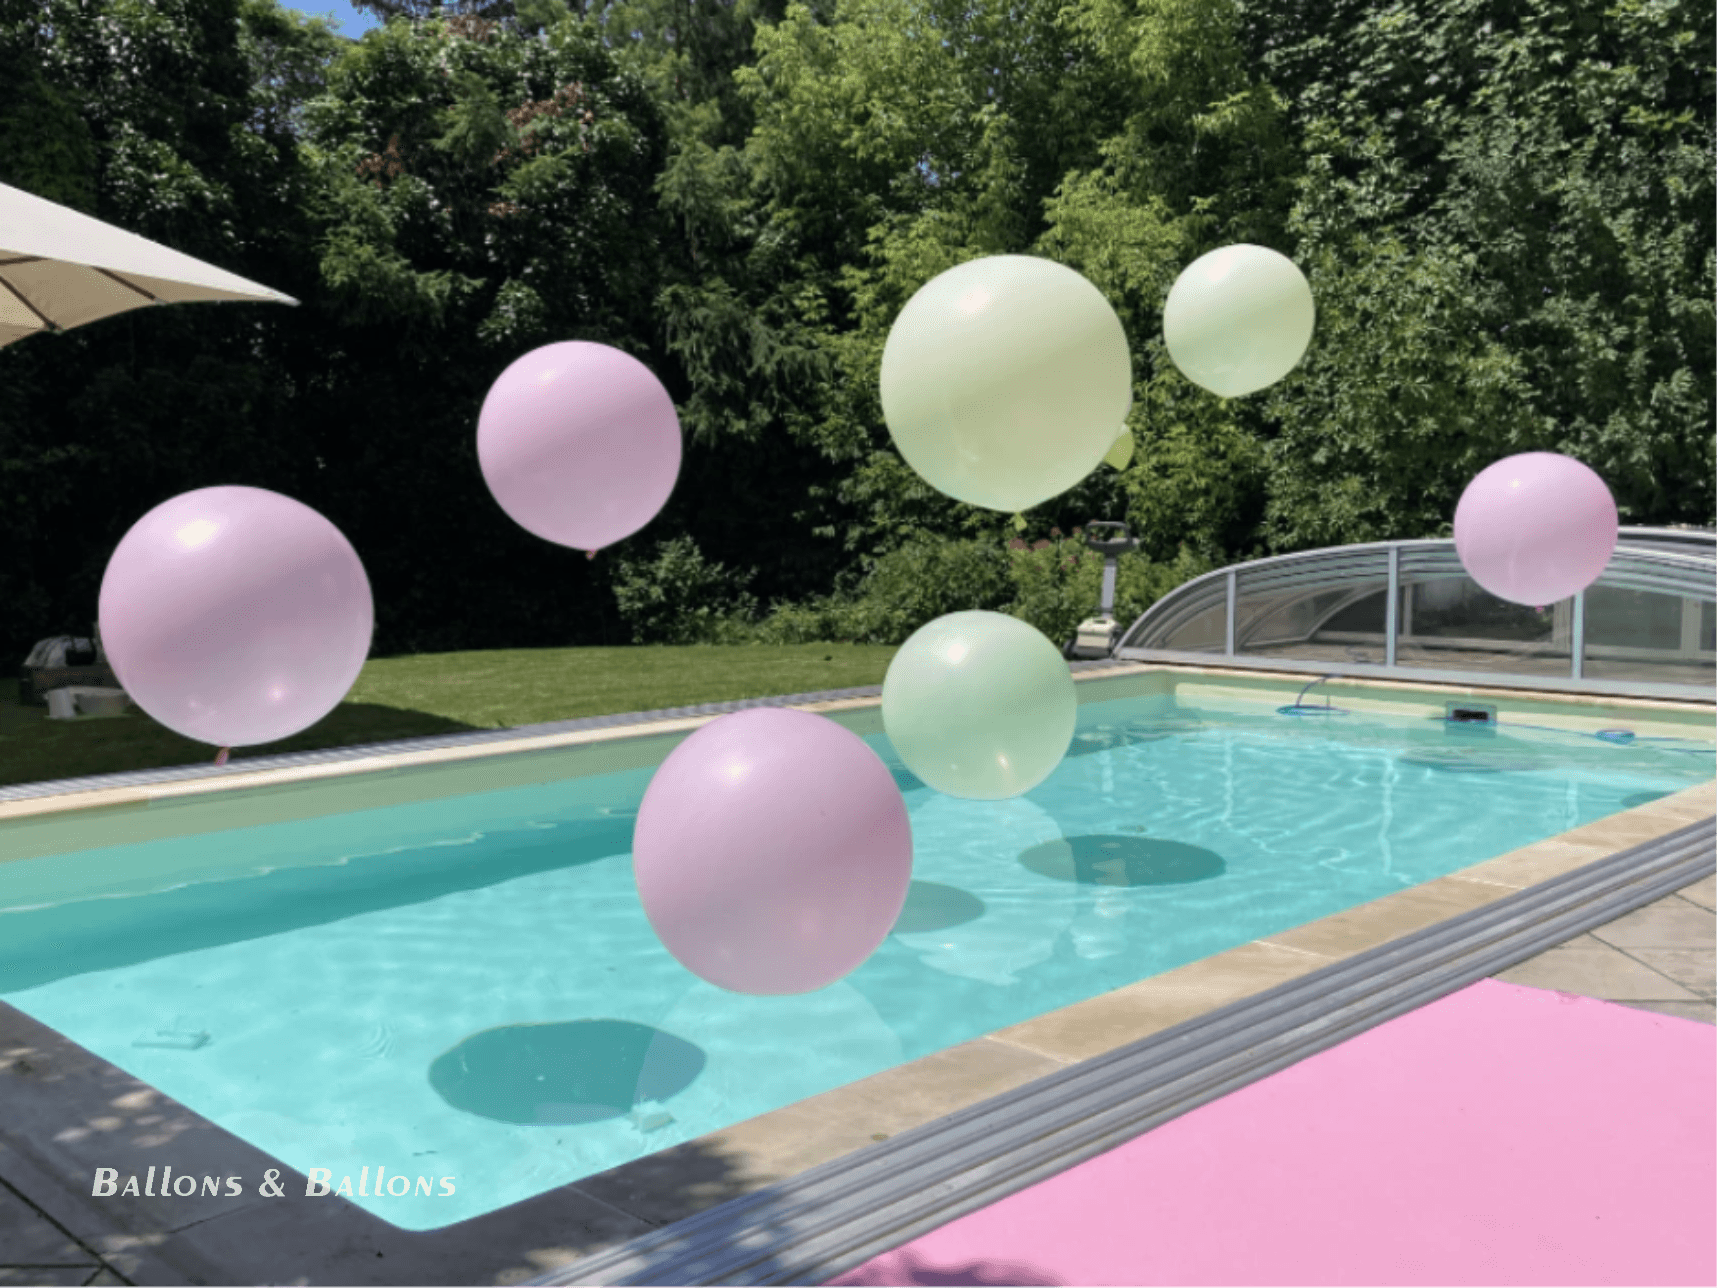 Ballons schwimmen in einem Pool auf einer Poolparty im Freien